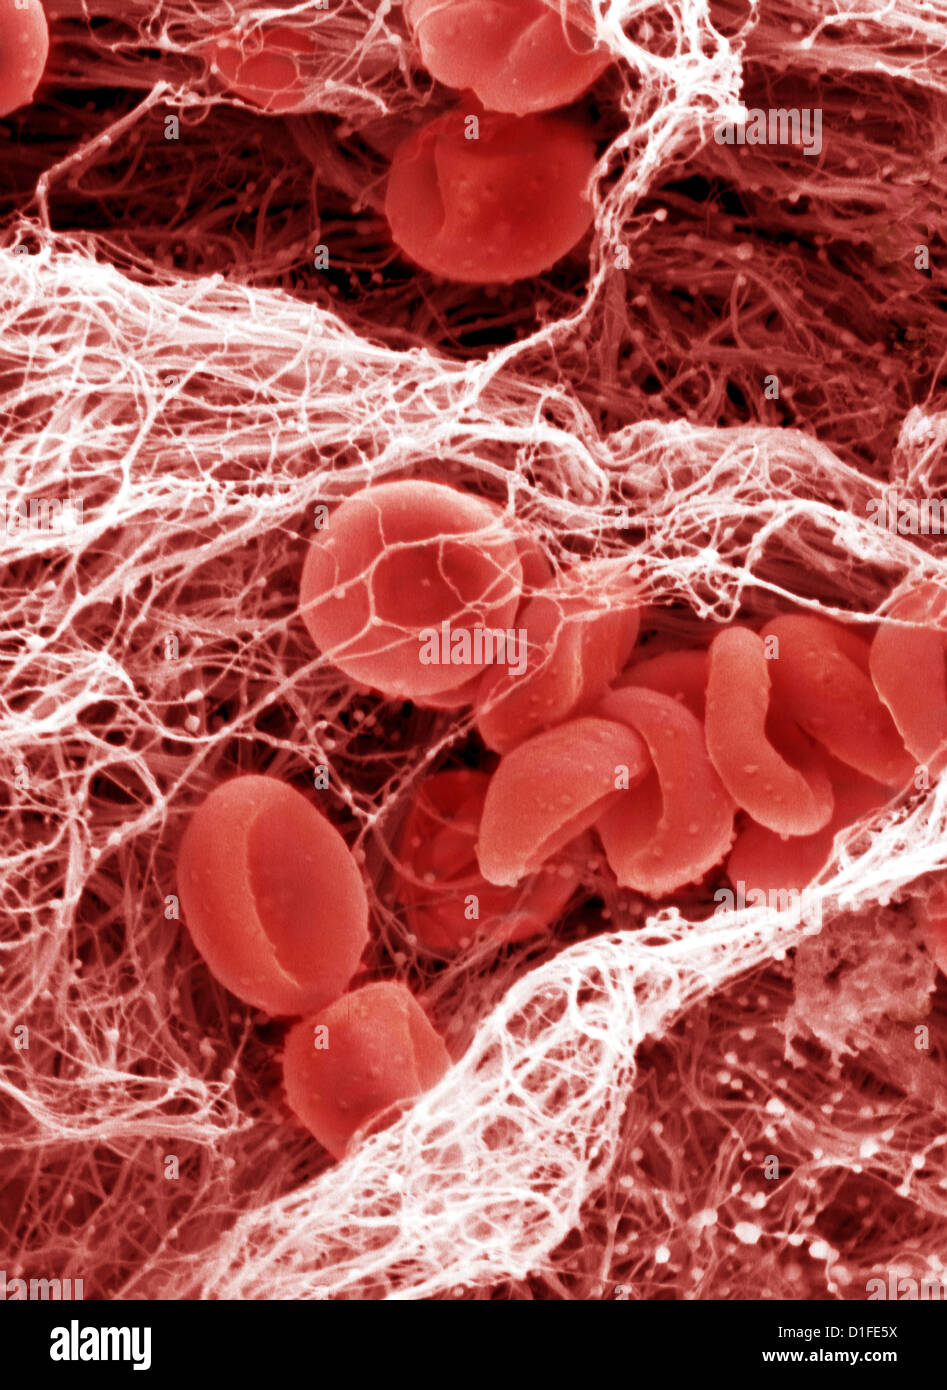 SEM X4000- di coagulo di sangue Foto Stock